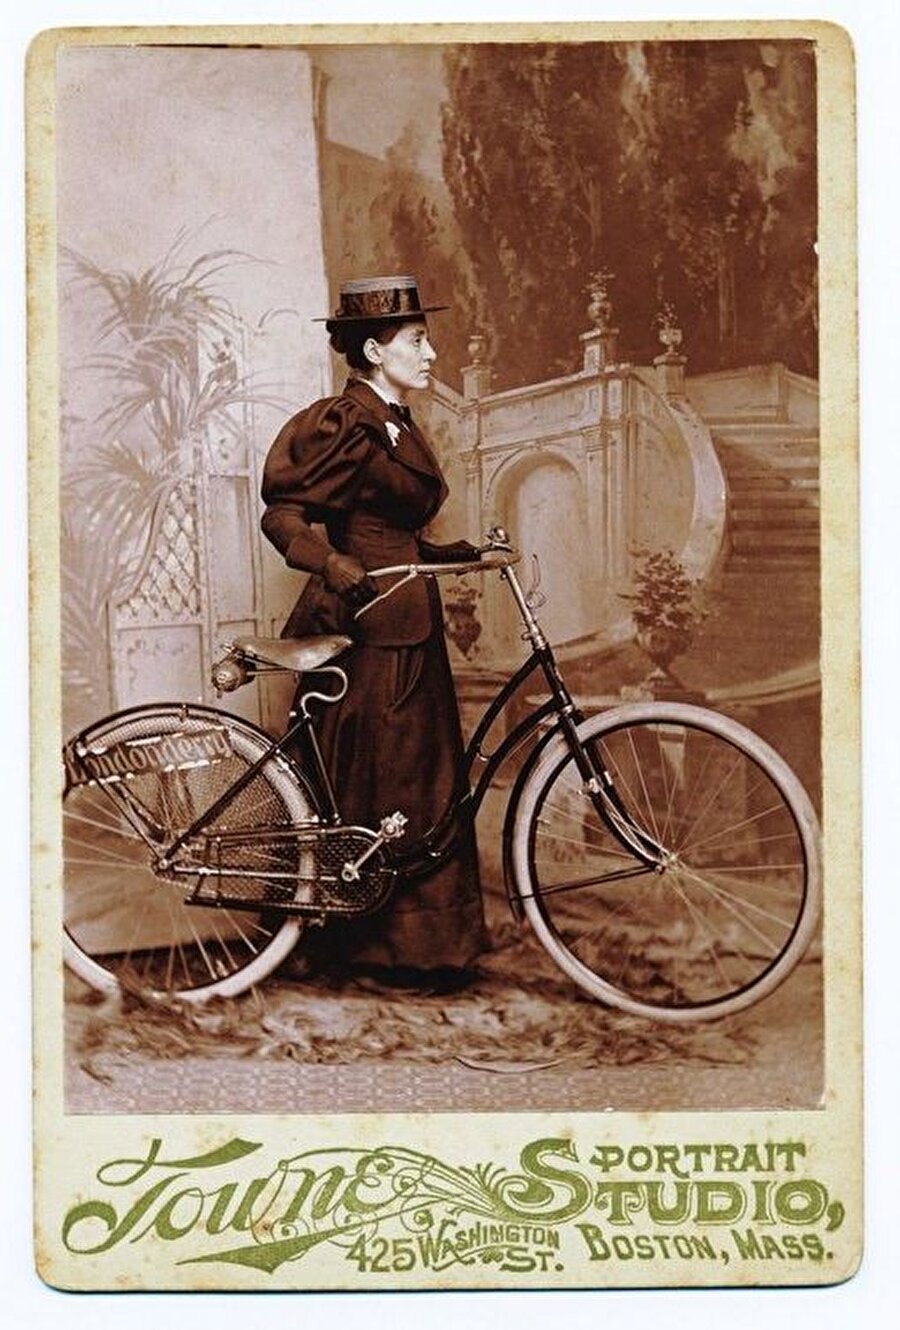 Mart 1895’de San Francisco’ya ulaşmasından hemen sonra, yolculuğunun final ayağına başladı
Bir bisikletli eşlikçiyle Los Angeles'e gitti. Artık bisikletinin ve giysilerinin arkasında dalgalanan 50'ye yakın bayrak vardı. Şehirden şehre geçerken, kasasına hediyelik eşyalar ve yerel tüccarların promosyonlarını da ekliyordu.

Tam olarak 15 ay sonra, uzun yolculuğuna başladığı yere, Boston'a dönebildi. Beklendiği kadar pedal çevirememiş olsa da bu büyük bir başarıydı. Uzun süre gündemde kaldı; zeki ve becerikli bir girişimci, eğlenceli bir konuşmacı olarak onaylandı.
